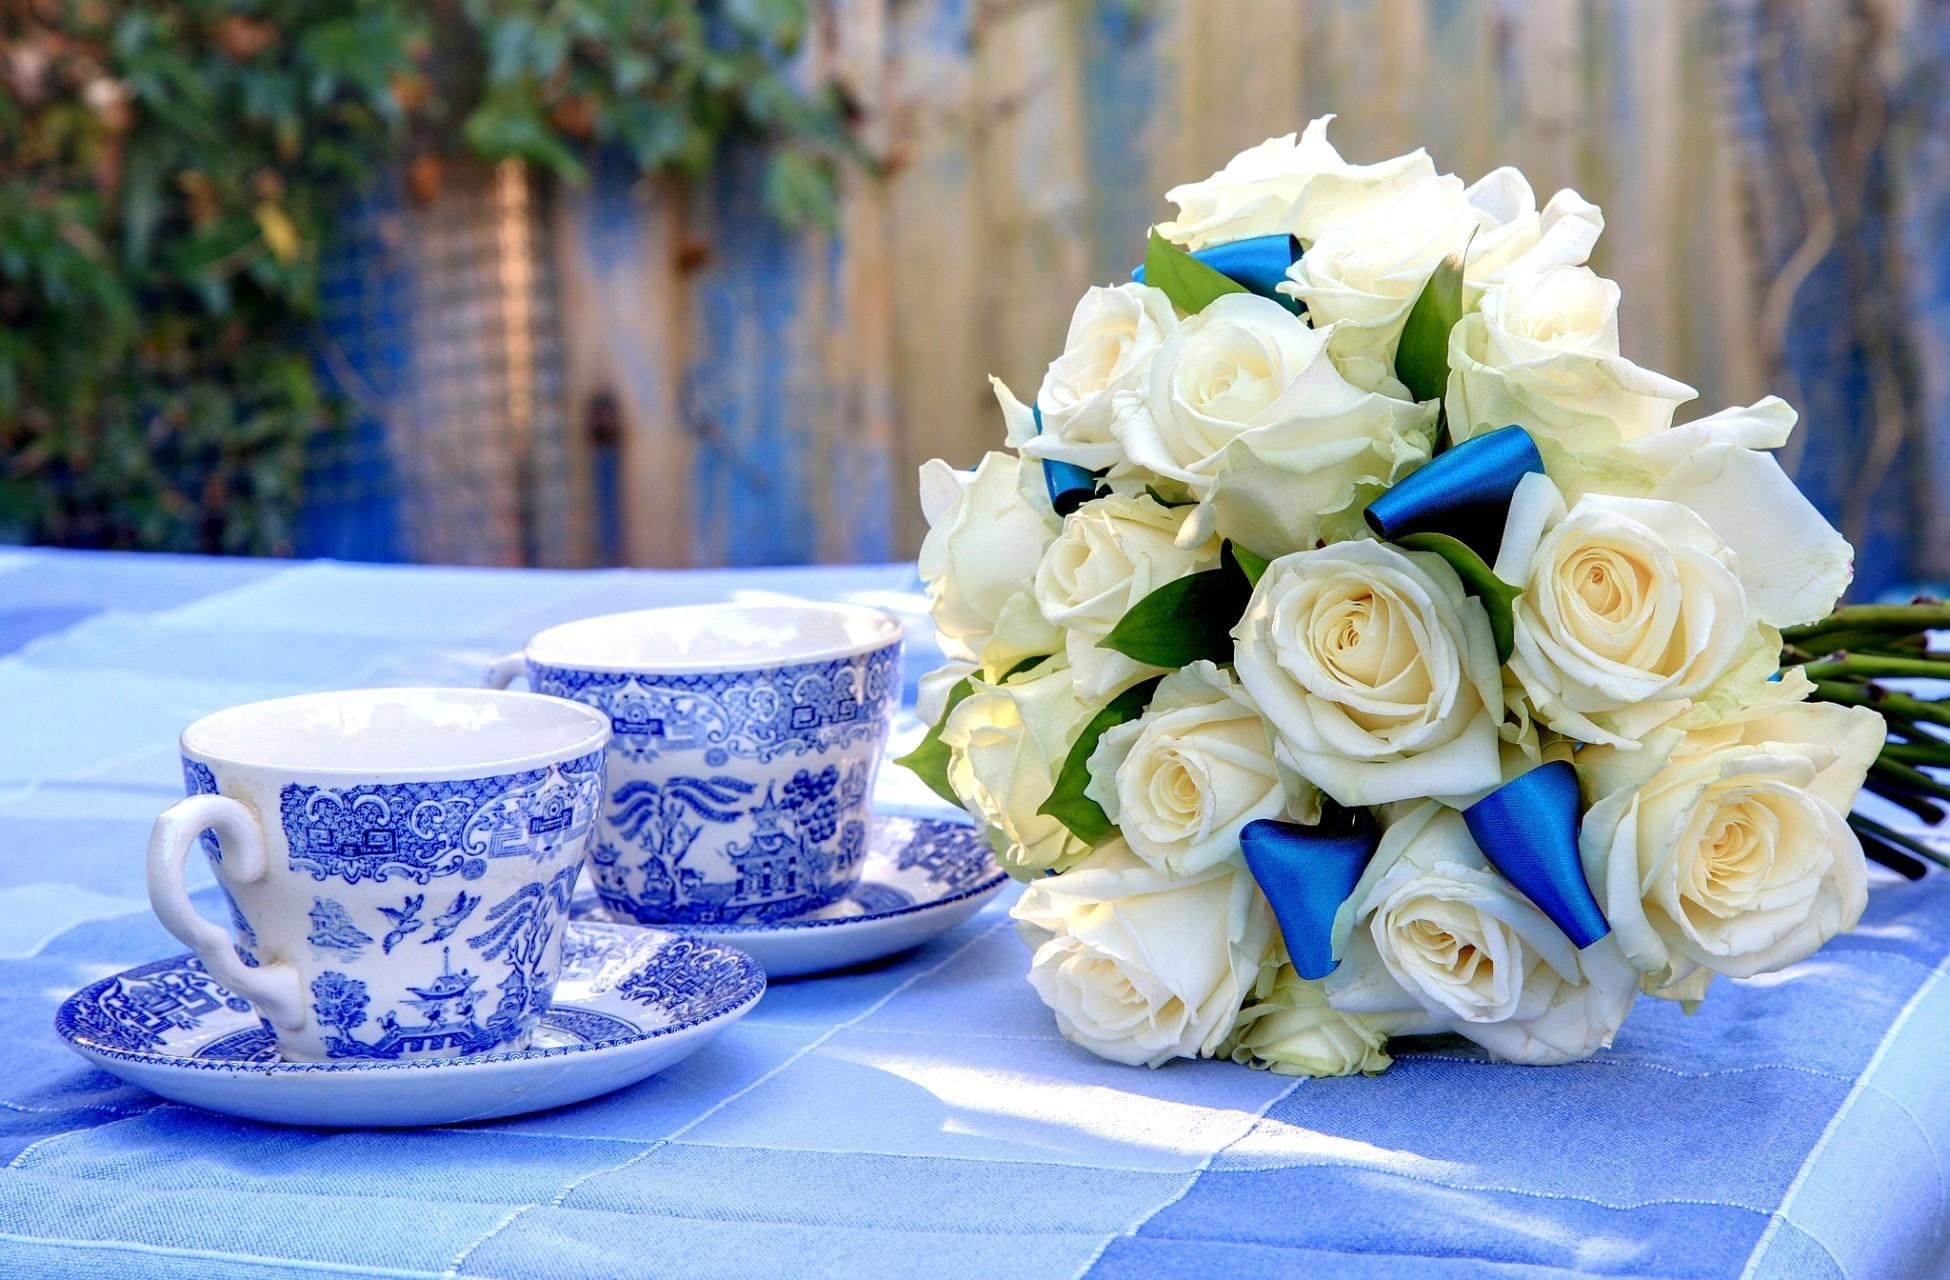 桌上的白色新娘捧花